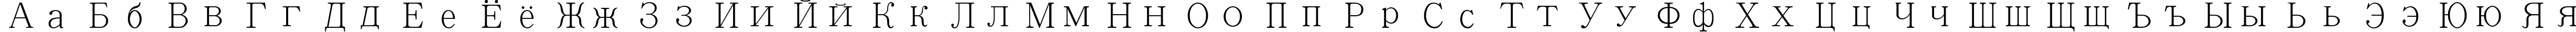 Пример написания русского алфавита шрифтом Adobe Ming Std L